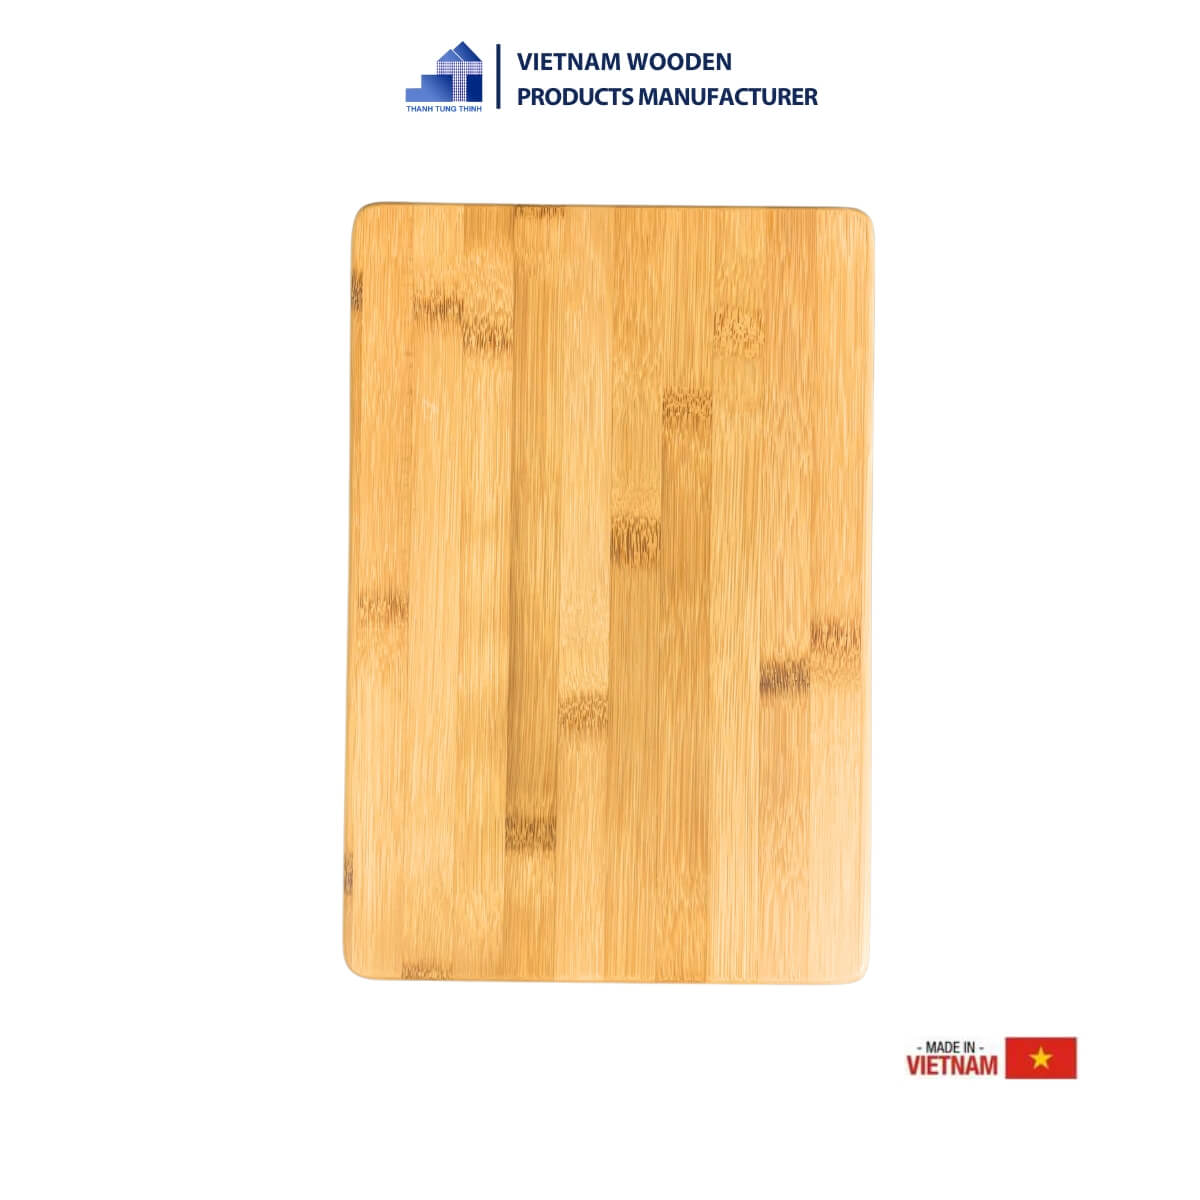 Basic Wooden Cutting Board [WCB12]